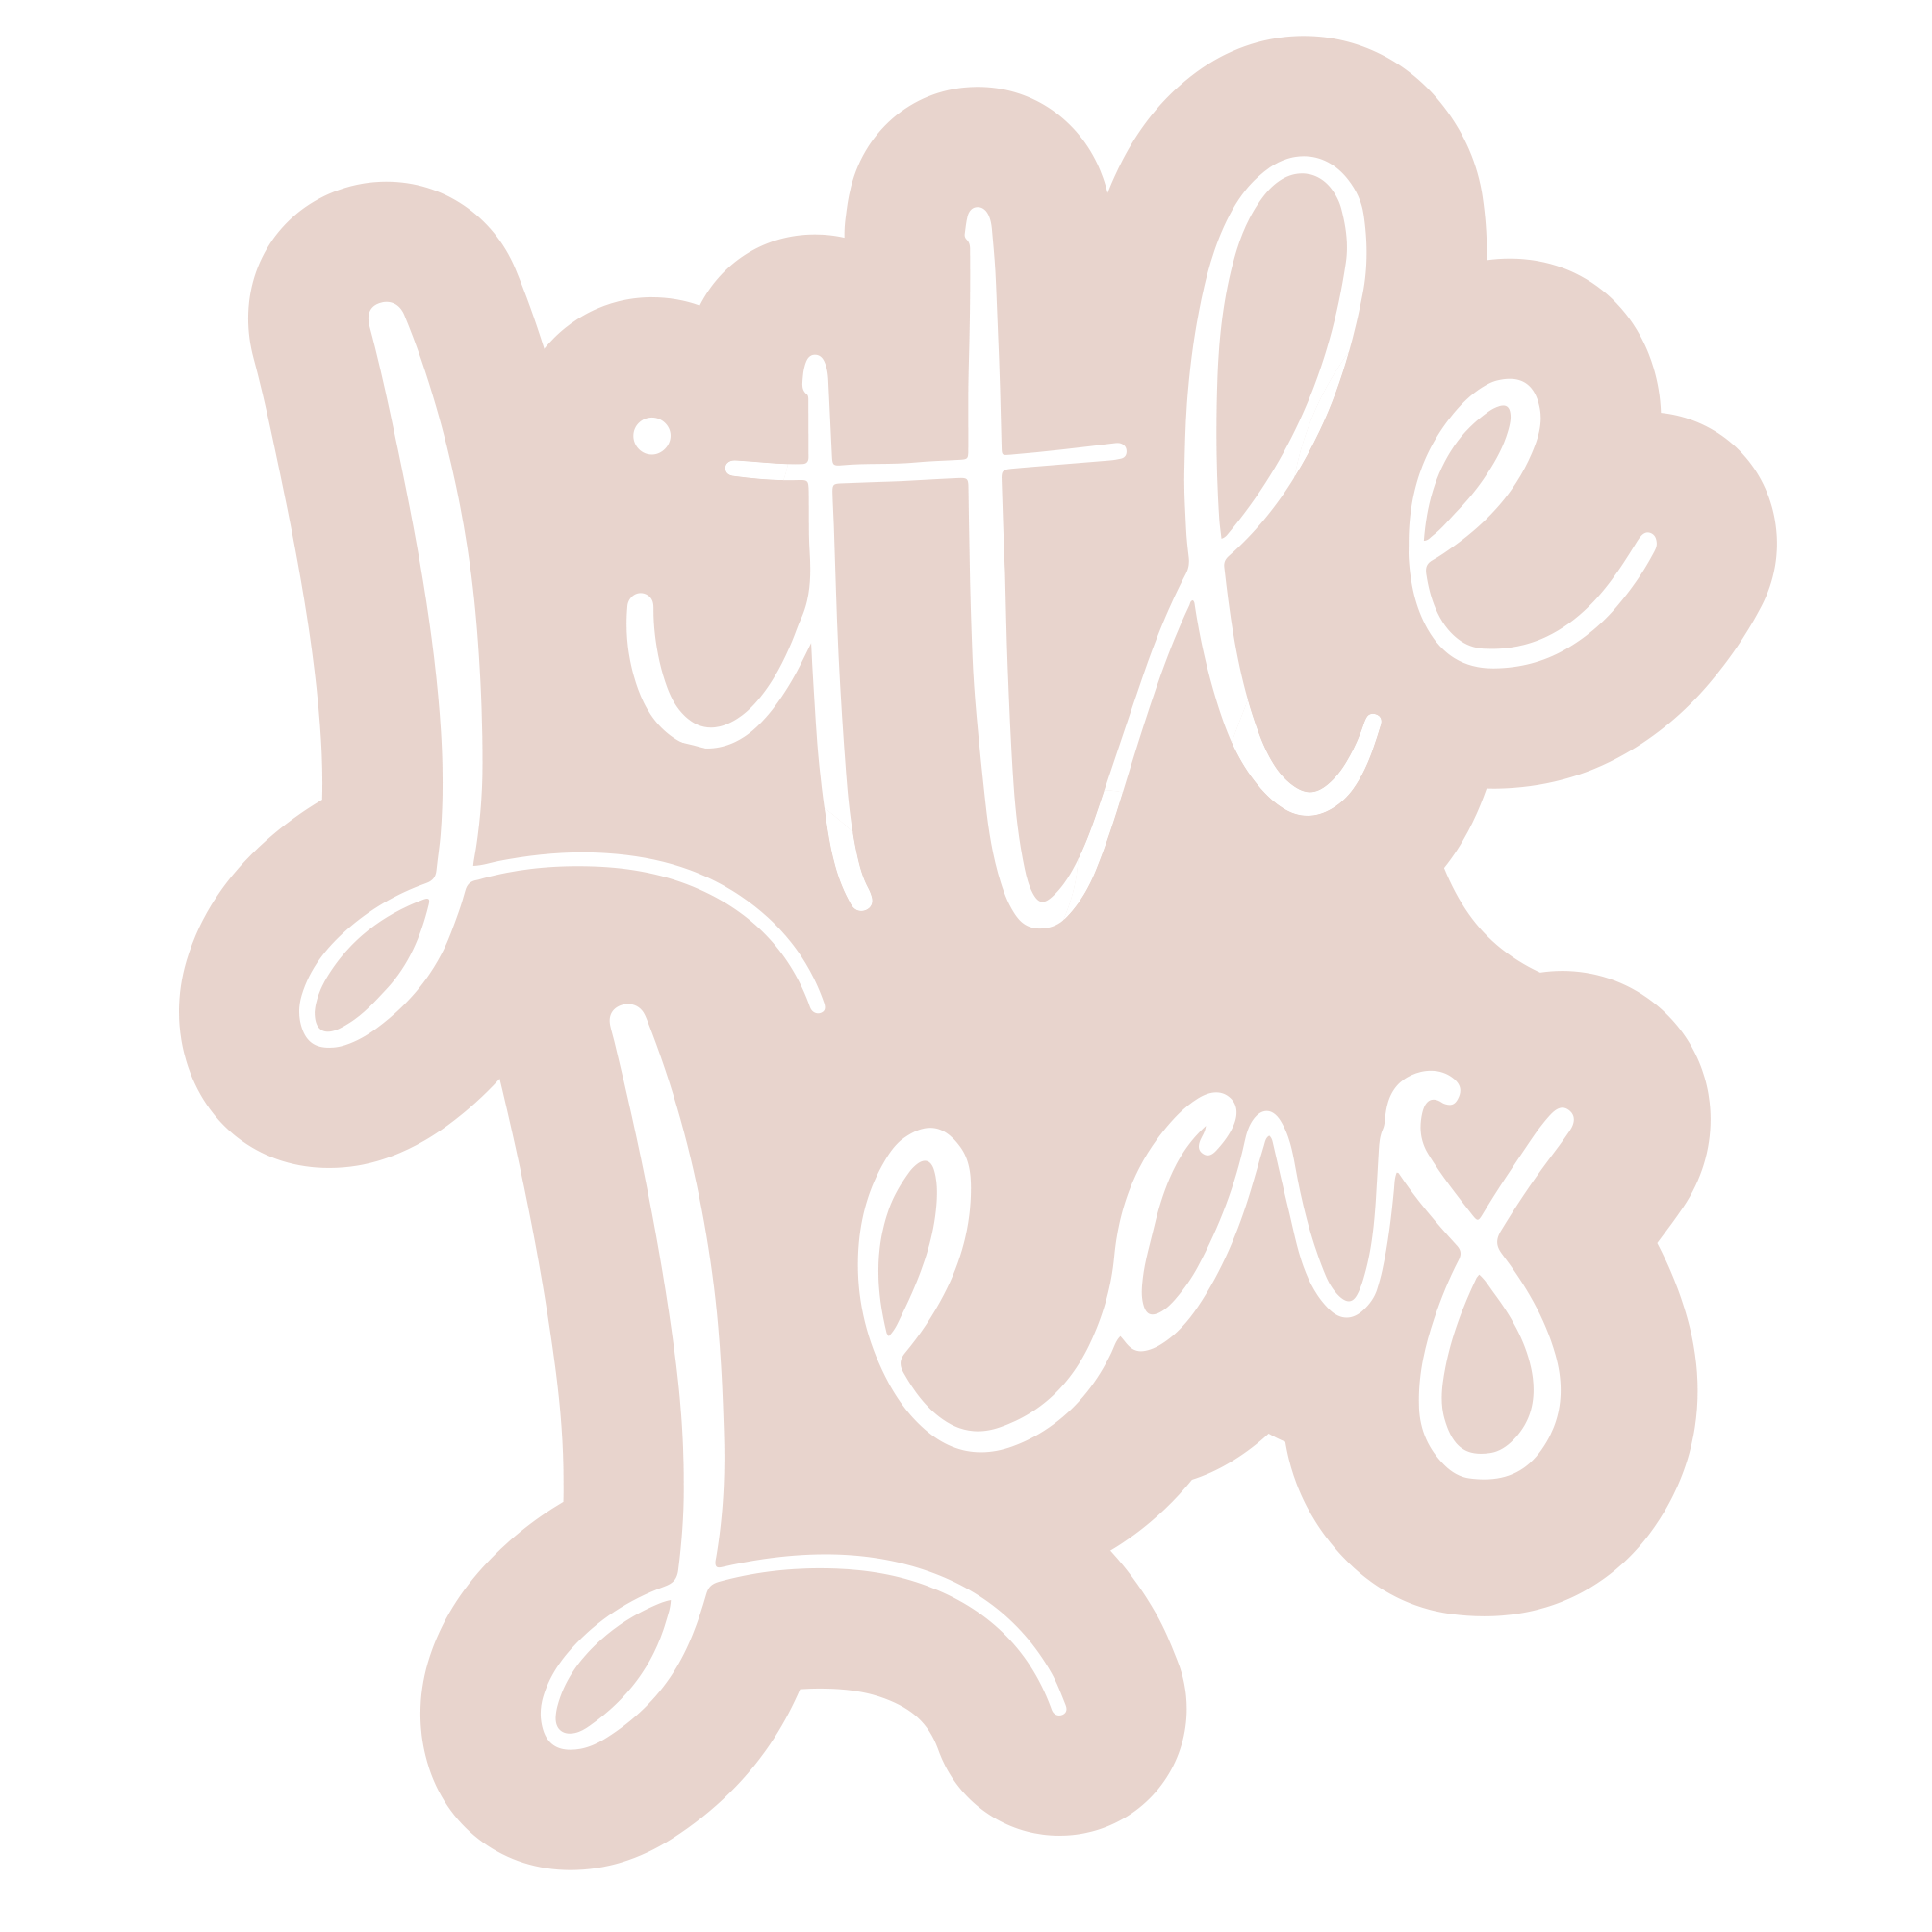 Little Leas